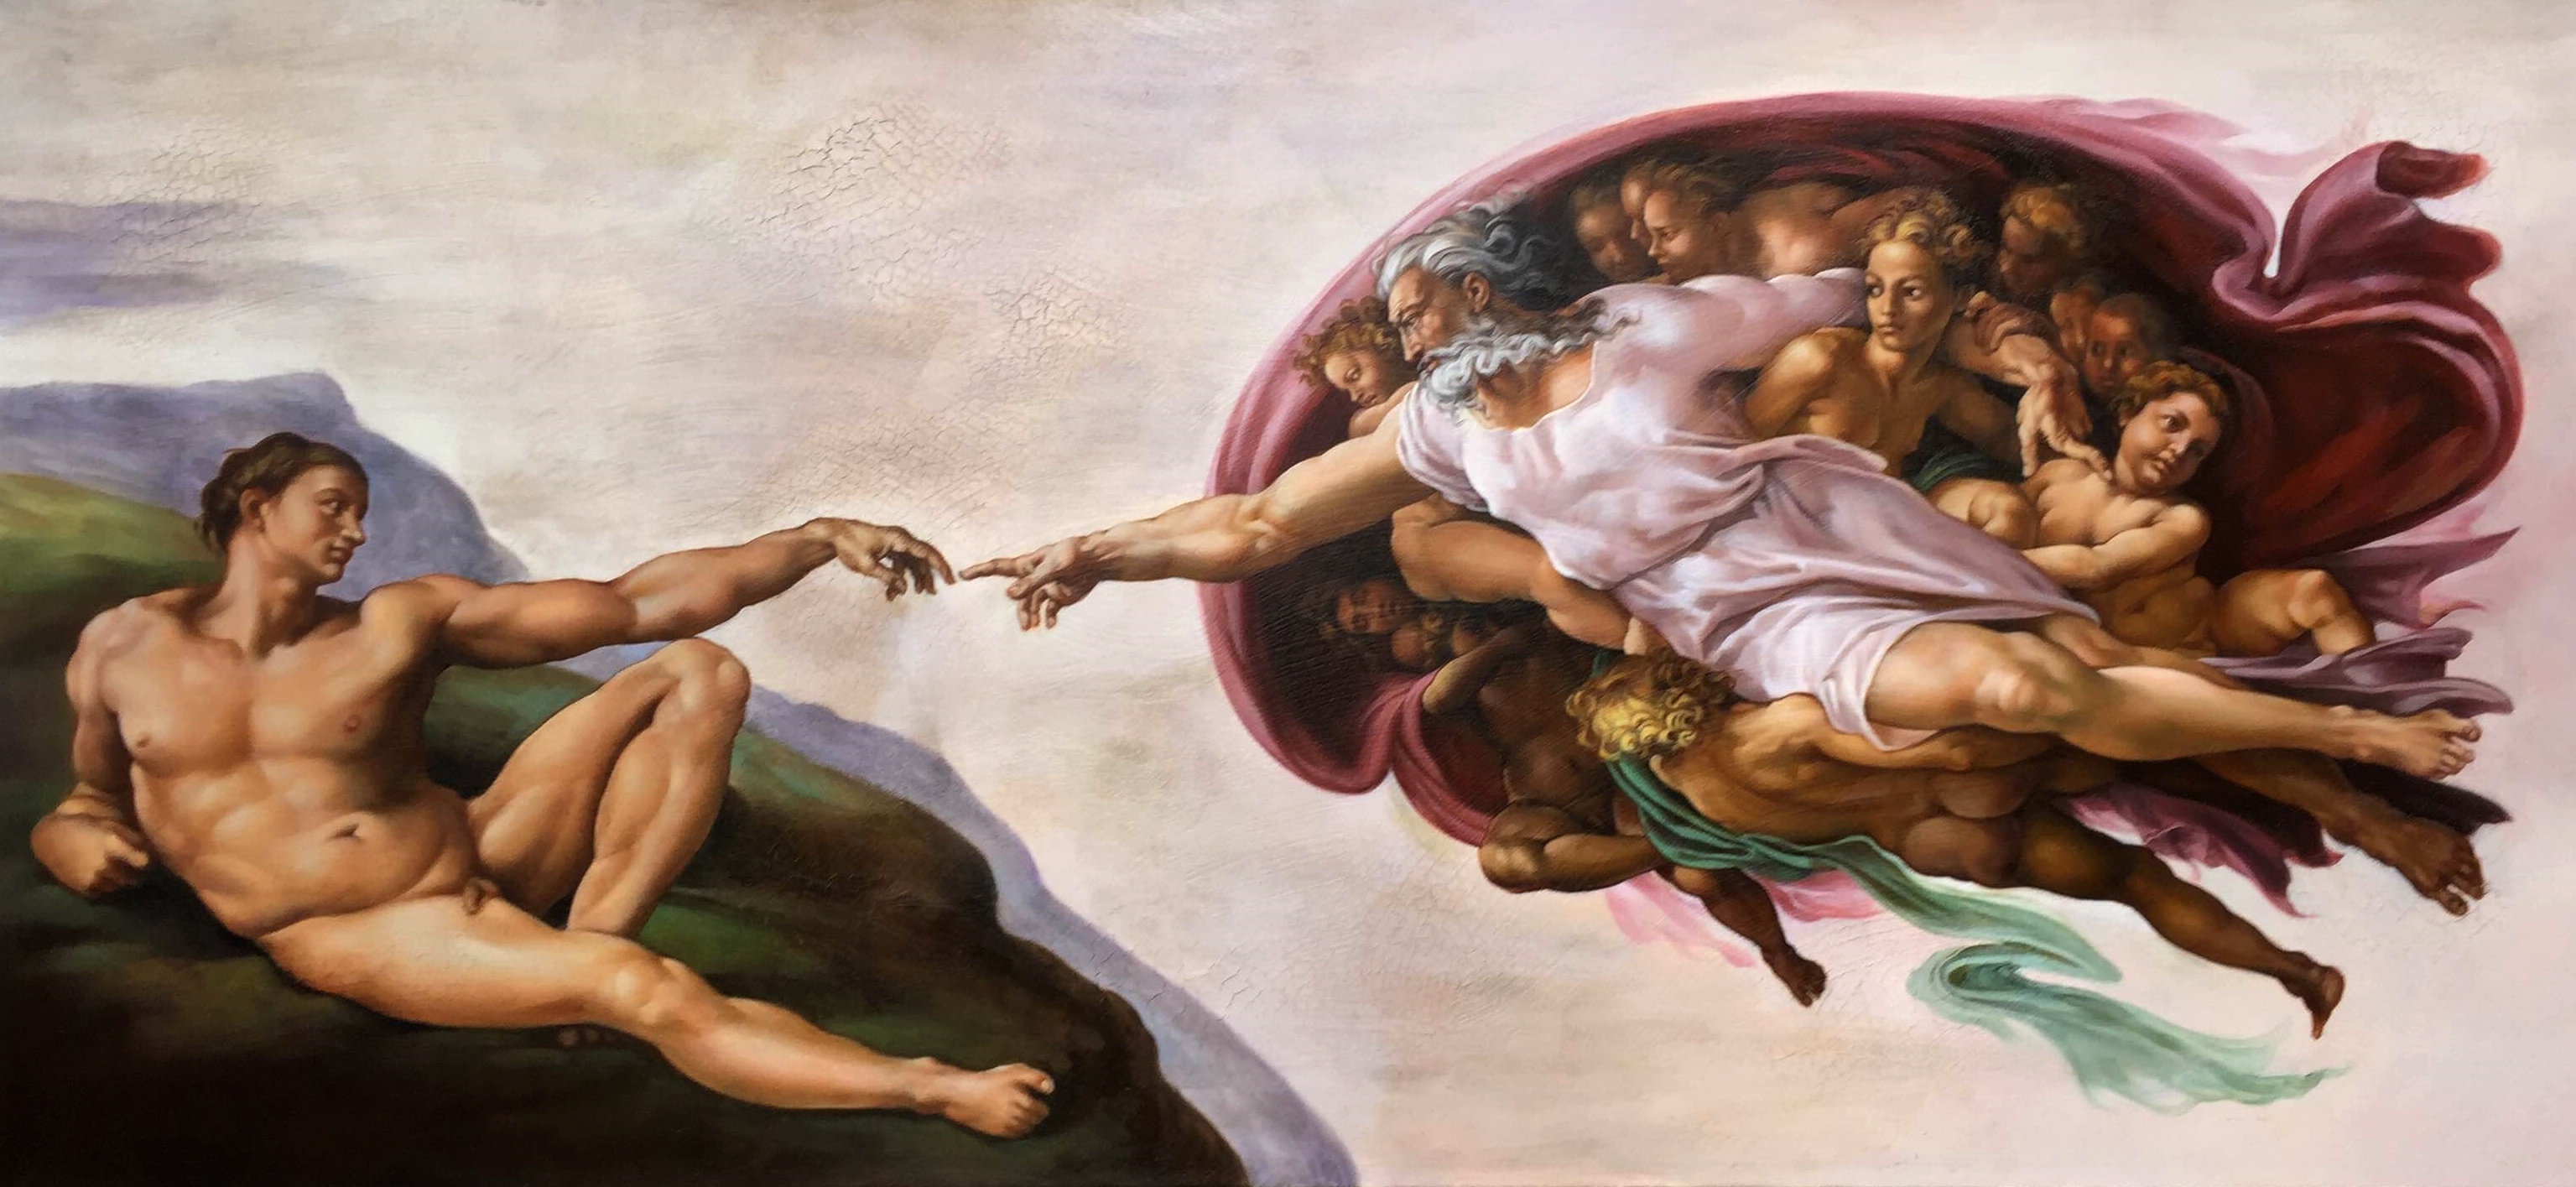 Рождение возрождение. Микеланджело Буонарроти Сотворение Адама. Микеланджело Буонарроти, «Сотворение Адама» (1511-1512). Микеланджело Буонарроти рождение Адама. "Сотворение Адама" Микеланджело, 1511.